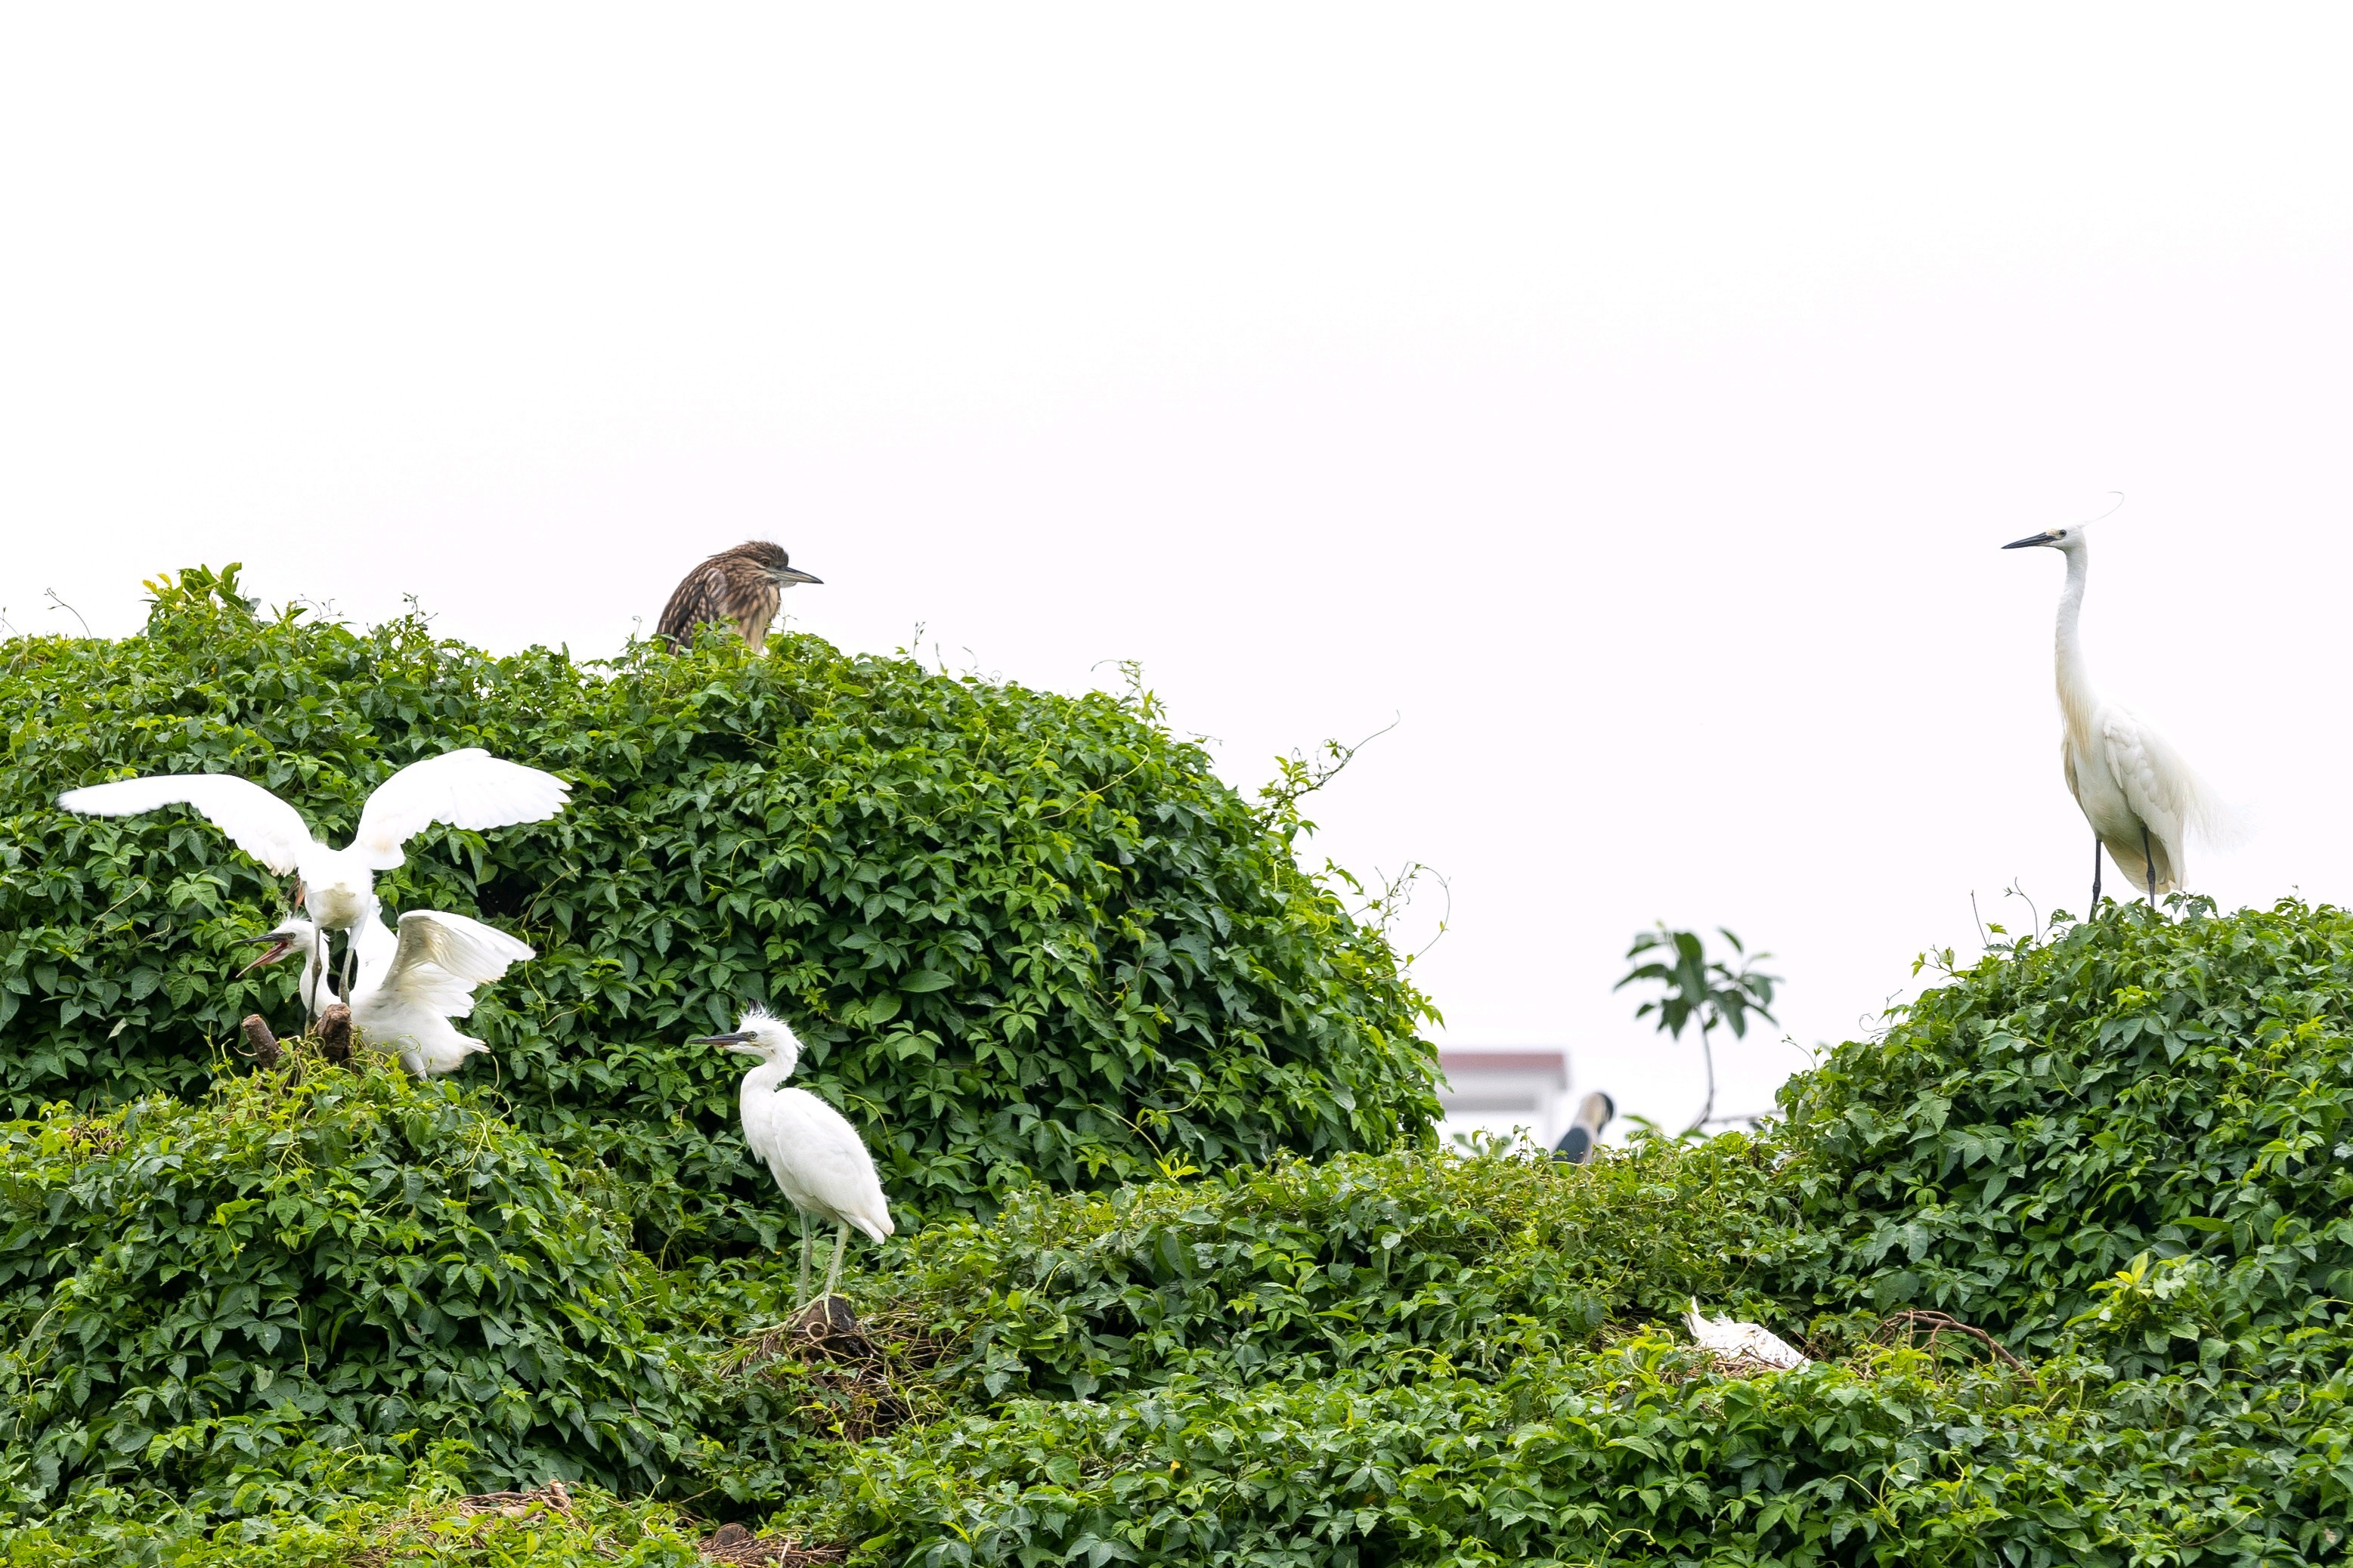 游人可近距离与鹭鸟来一场亲密接触。